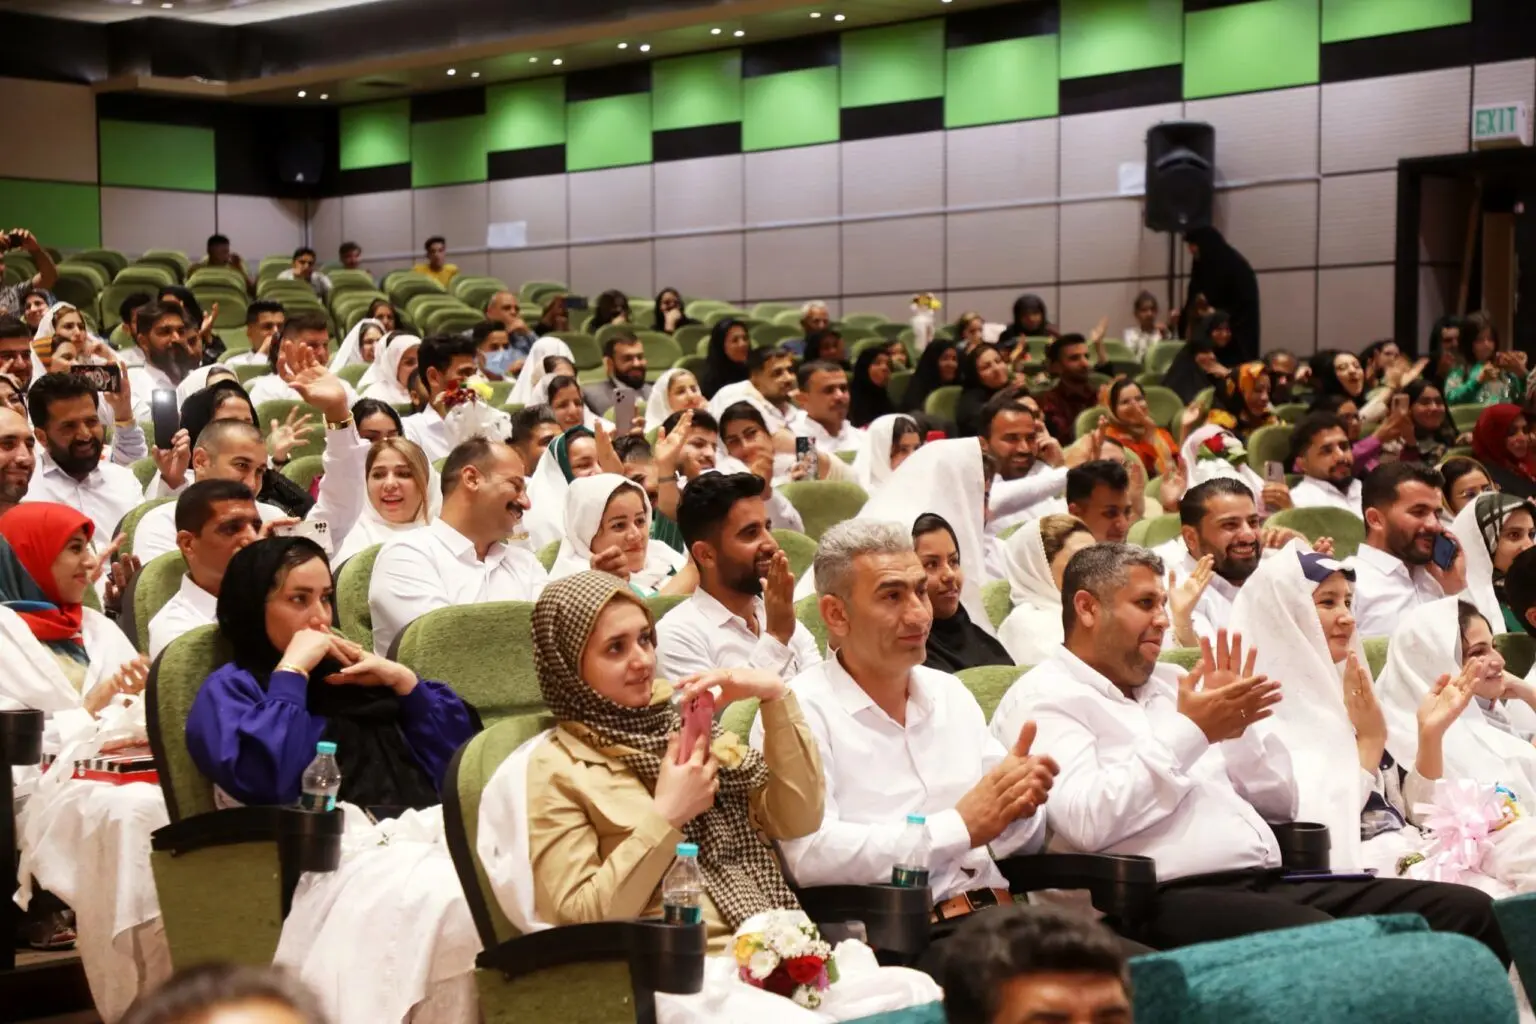 گزارش تصویری مراسم توزیع ۱۰۰ سری جهزیه به زوج های خوزستانی توسط شرکت فولاد اکسین خوزستان